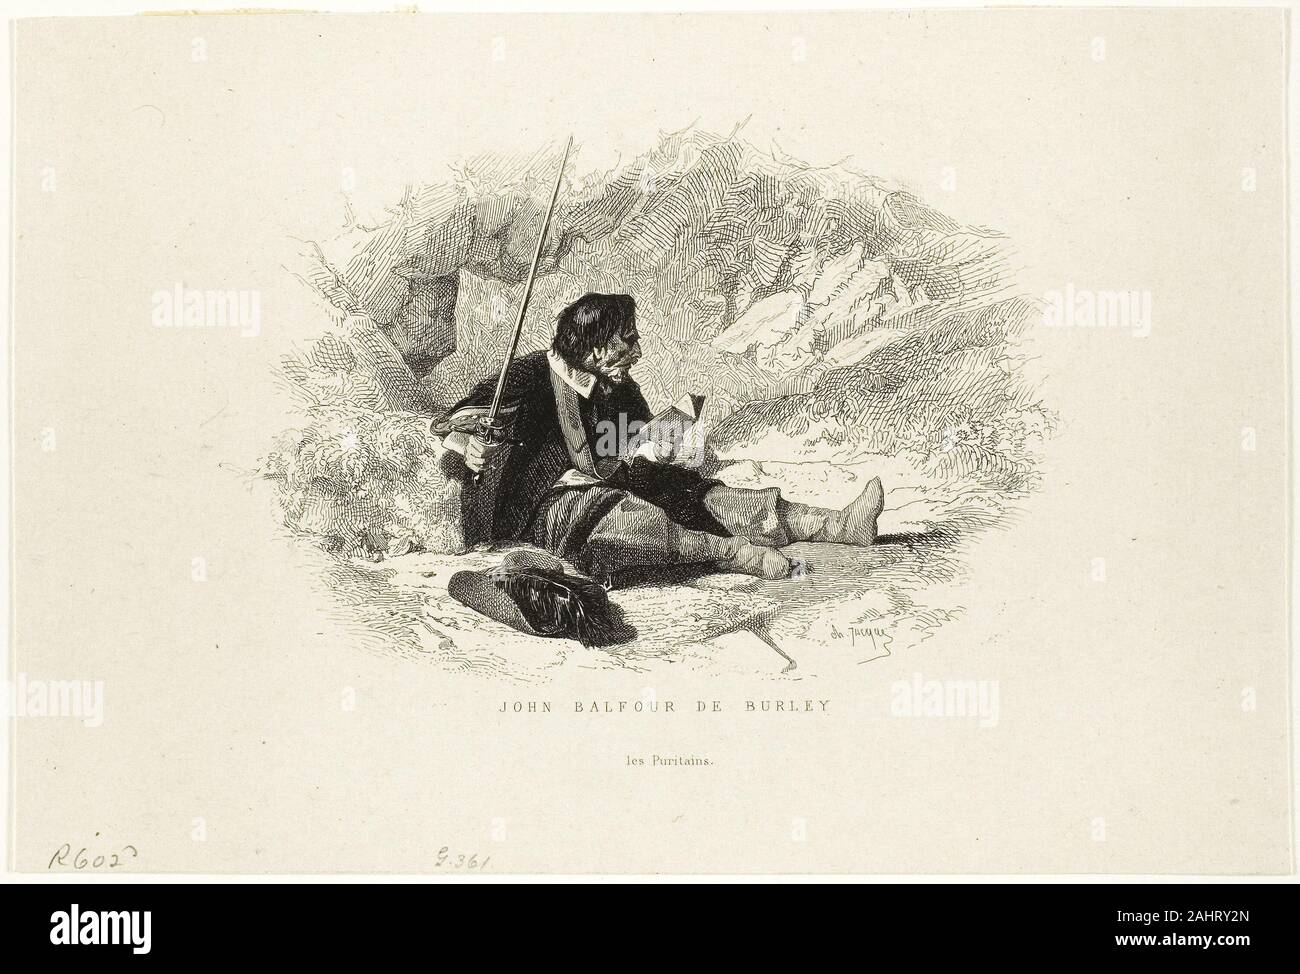 Charles Émile Jacque. John Balfour de Burley - Les Puritains. 1833-1894. La France. La gravure sur papier vélin ivoire Banque D'Images